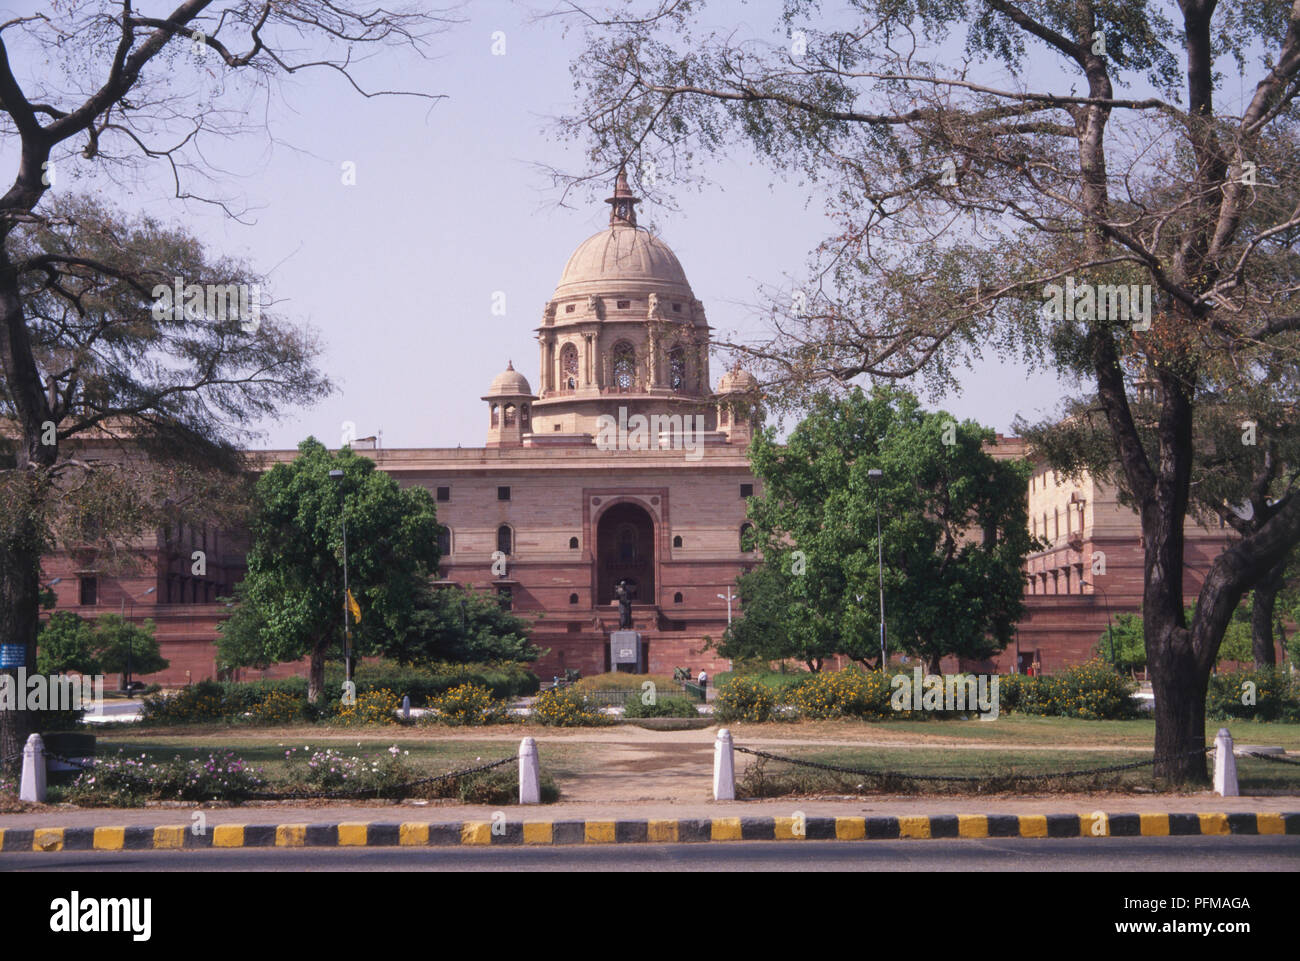 Indien, Delhi, Vijay Chowk, South Block Gehäuse Amt des Ministerpräsidenten und das Verteidigungsministerium, großes rotes Gebäude, hohe Kuppel, Statue im Innenhof, Bäume, gestreifte Vorfahrt im Vordergrund. Stockfoto